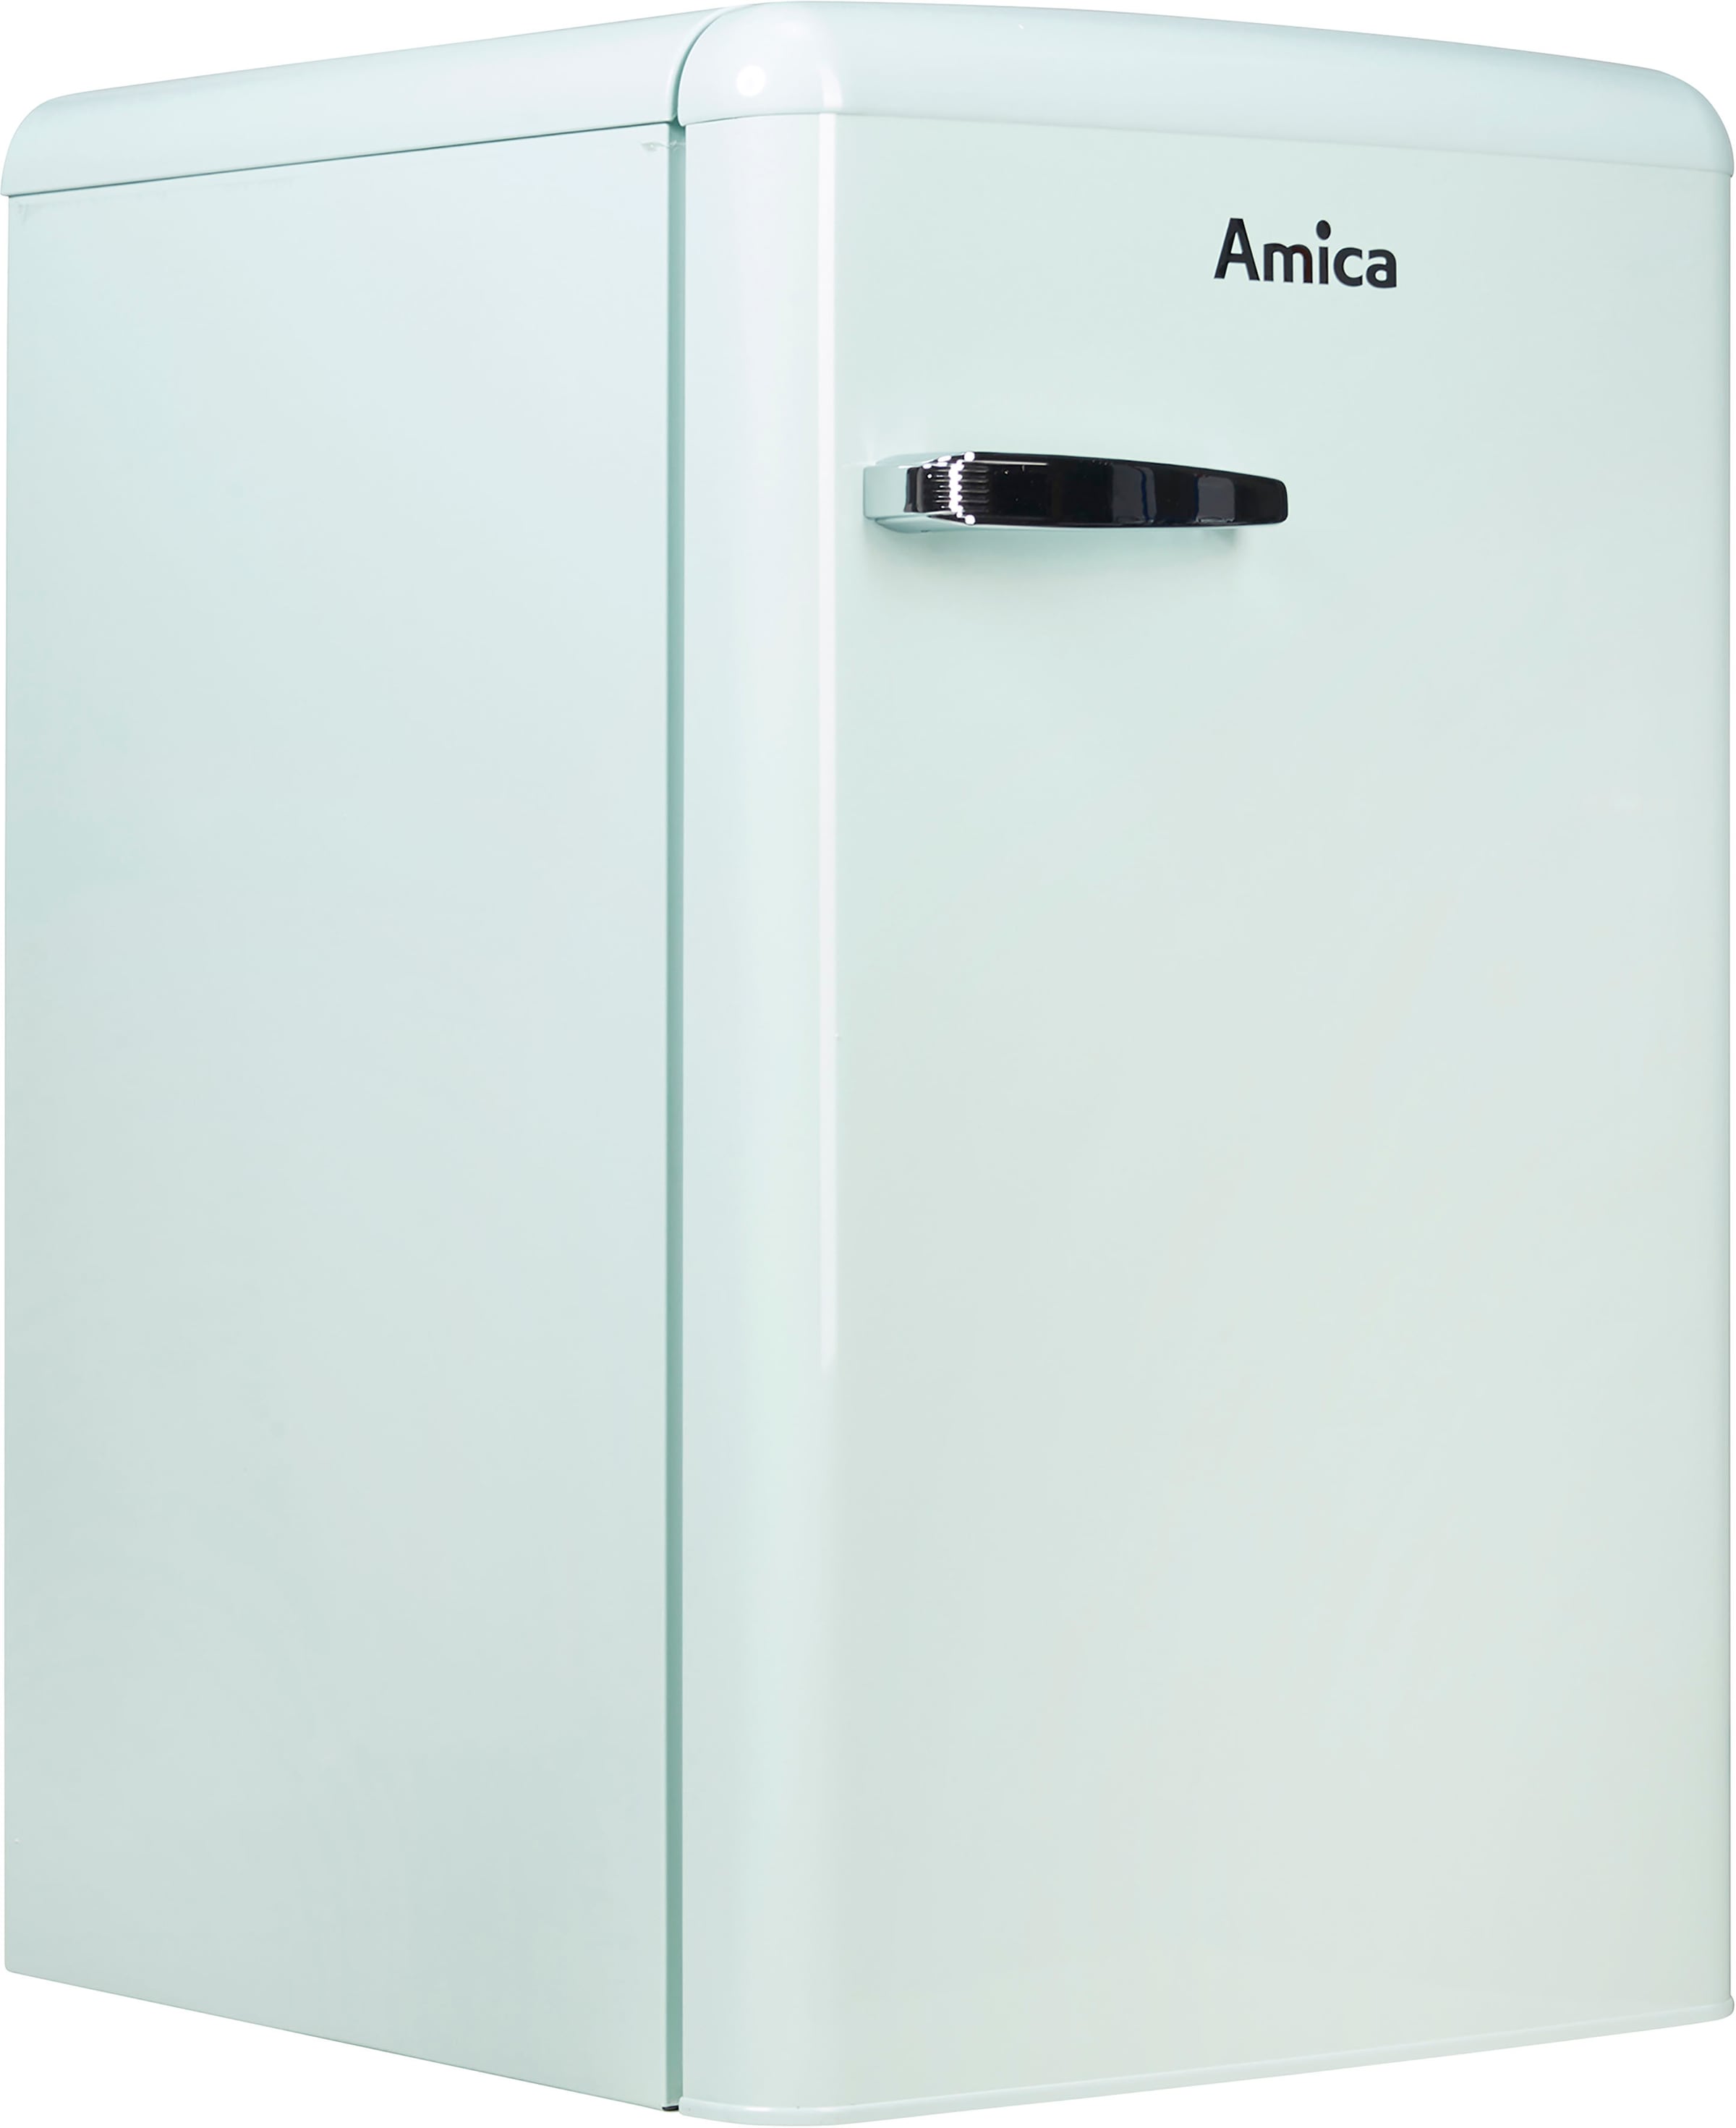 Amica Vollraumkühlschrank, VKS 15622-1 T, online cm breit bei 55 cm hoch, jetzt OTTO 87,5